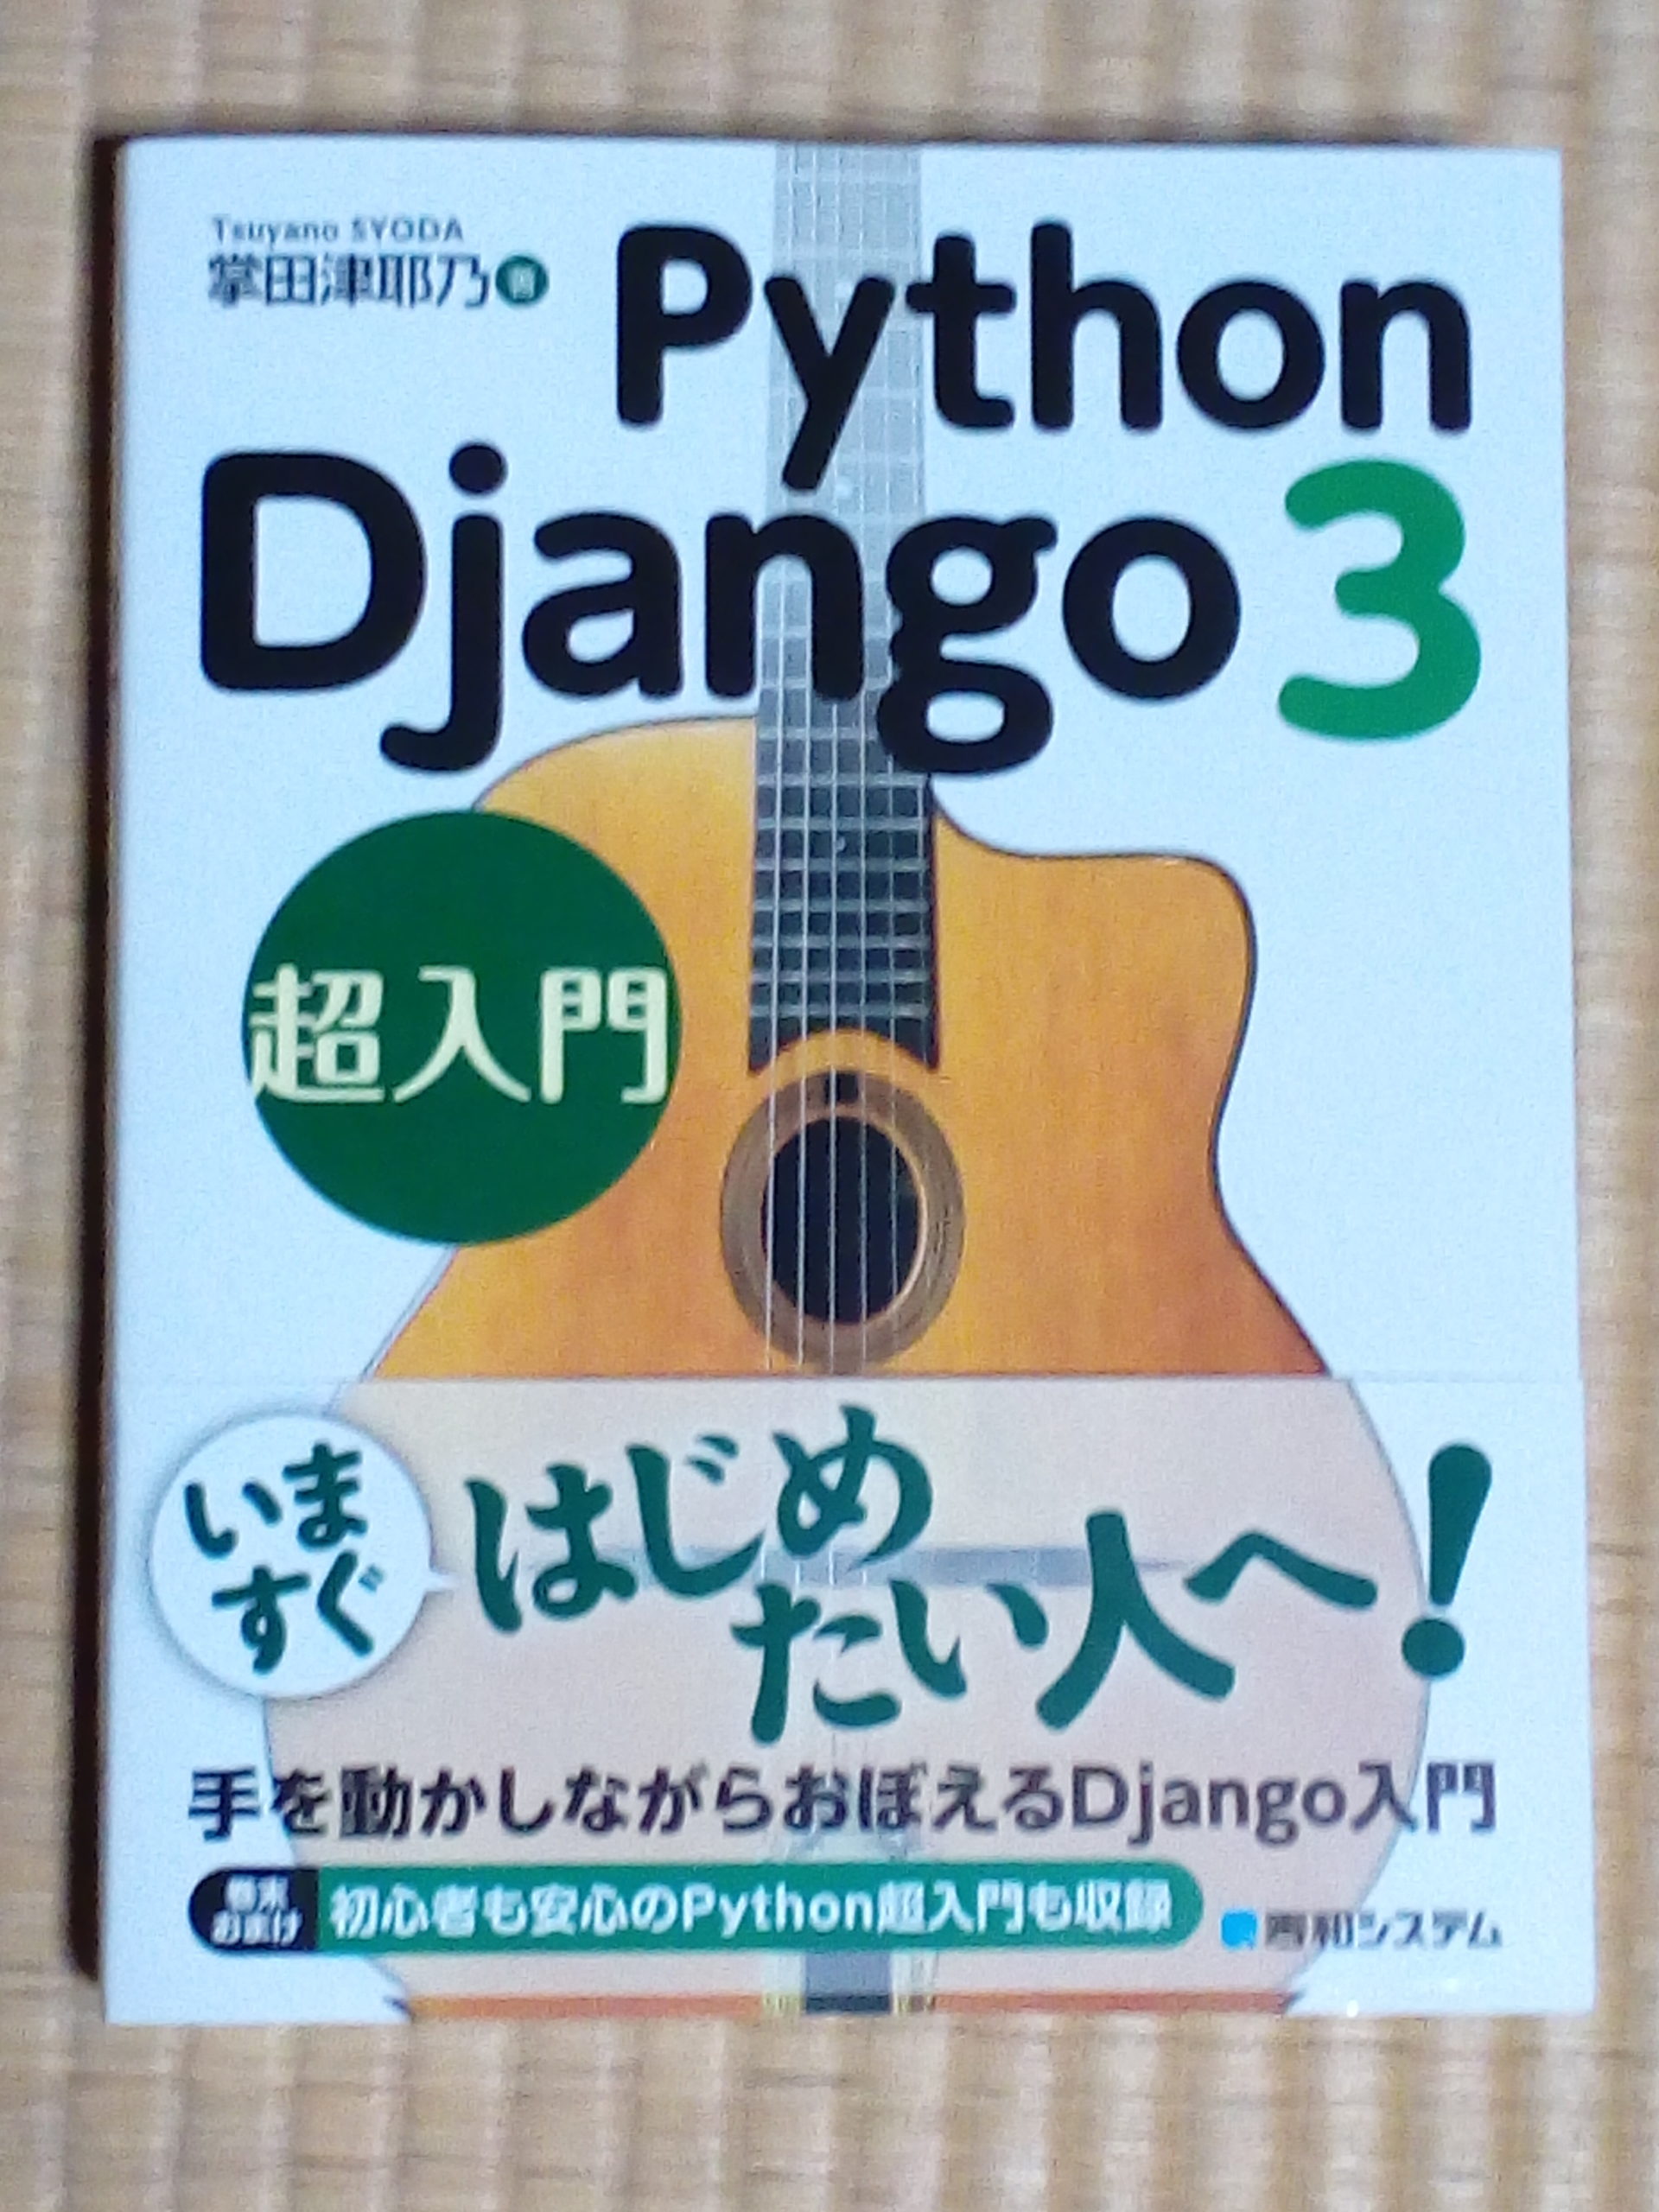 パイソンでのウェブアプリケーション開発の勉強 Python Django3超入門 本を買いました 自然栽培農家 ビリーズマーケットのブログ